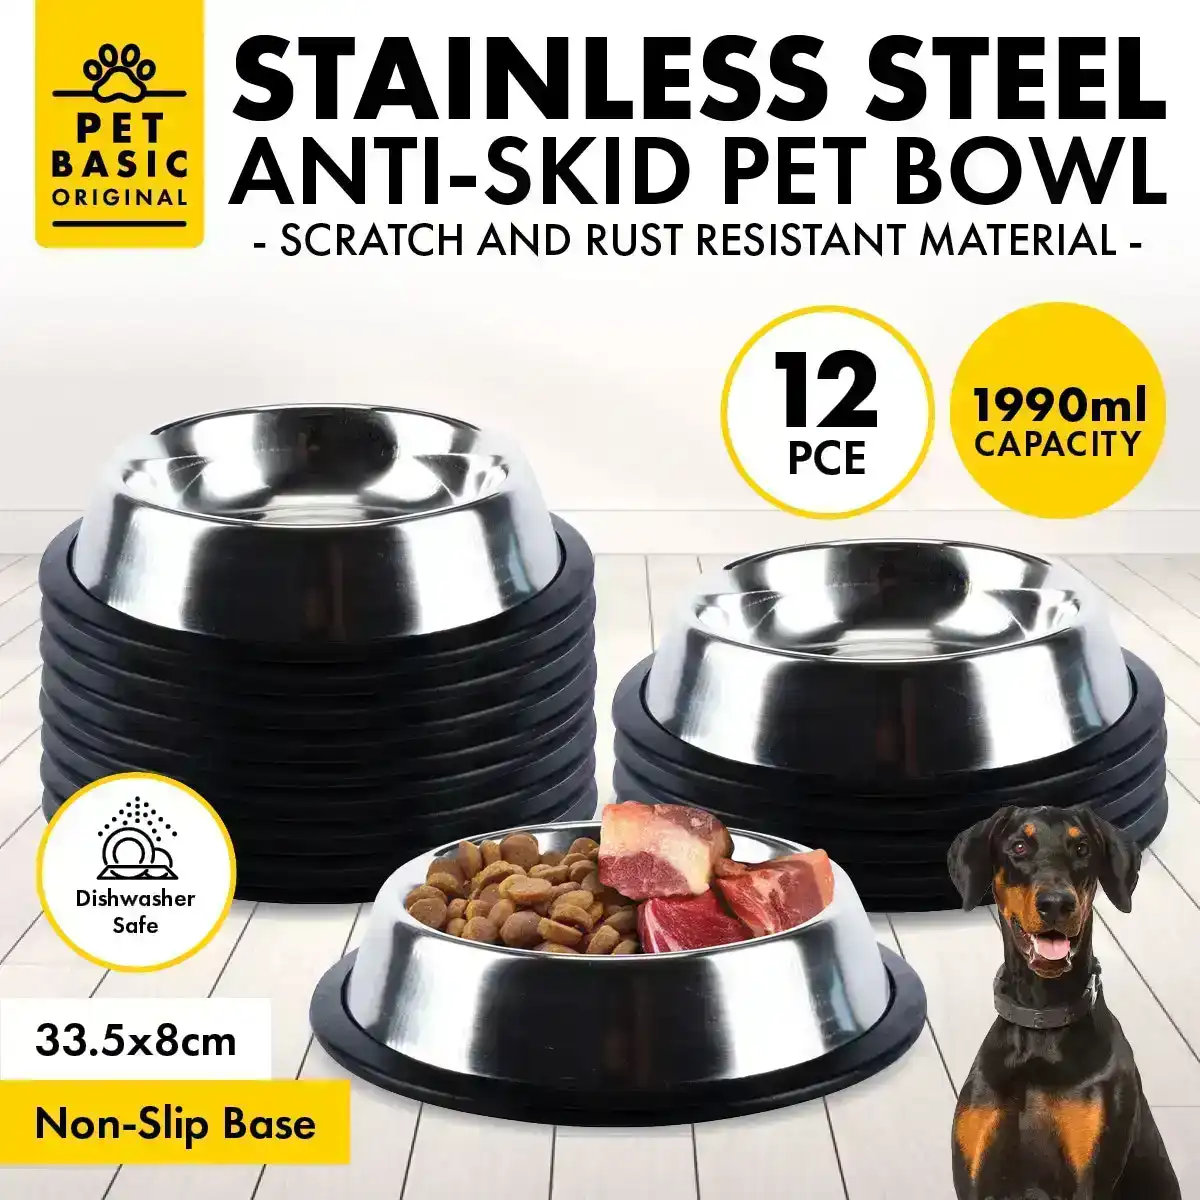 Pet Basic® 12PCE Stainless Steel Bowl 33.5cm Non Slip Base Rust Proof 1990ml